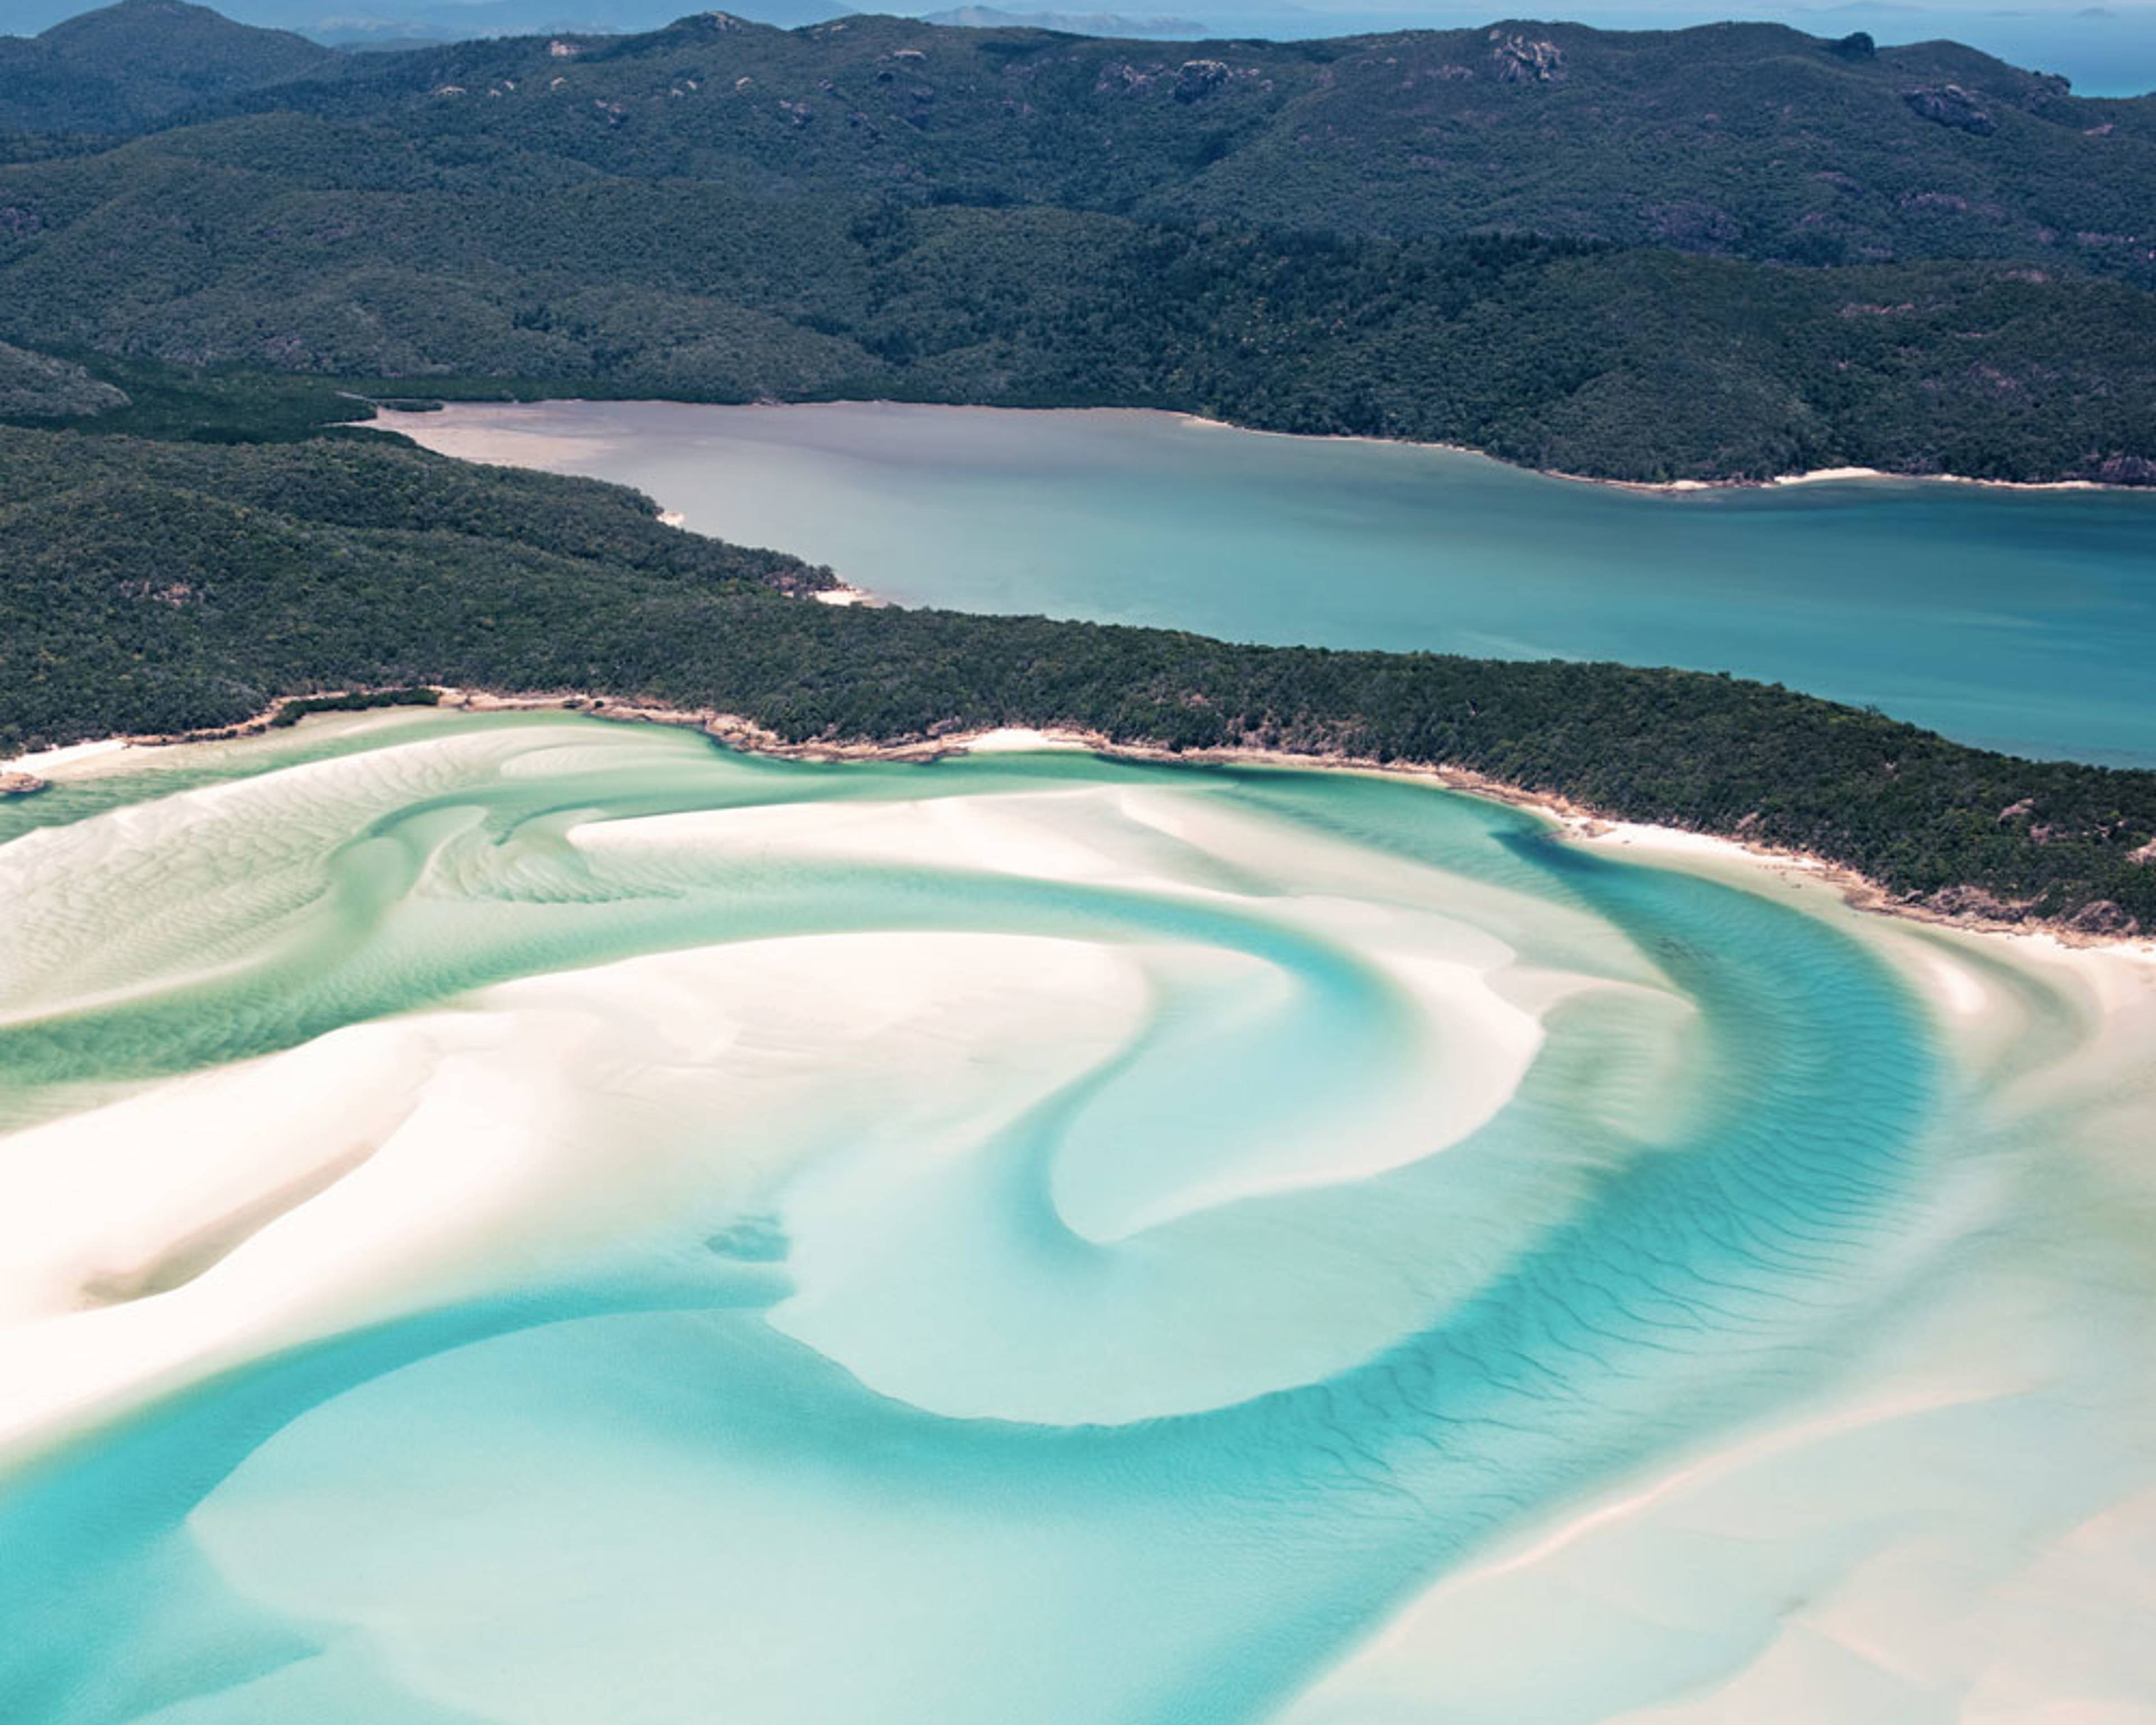 Découvrez les plus belles plages lors de votre voyage en Australie 100% sur mesure